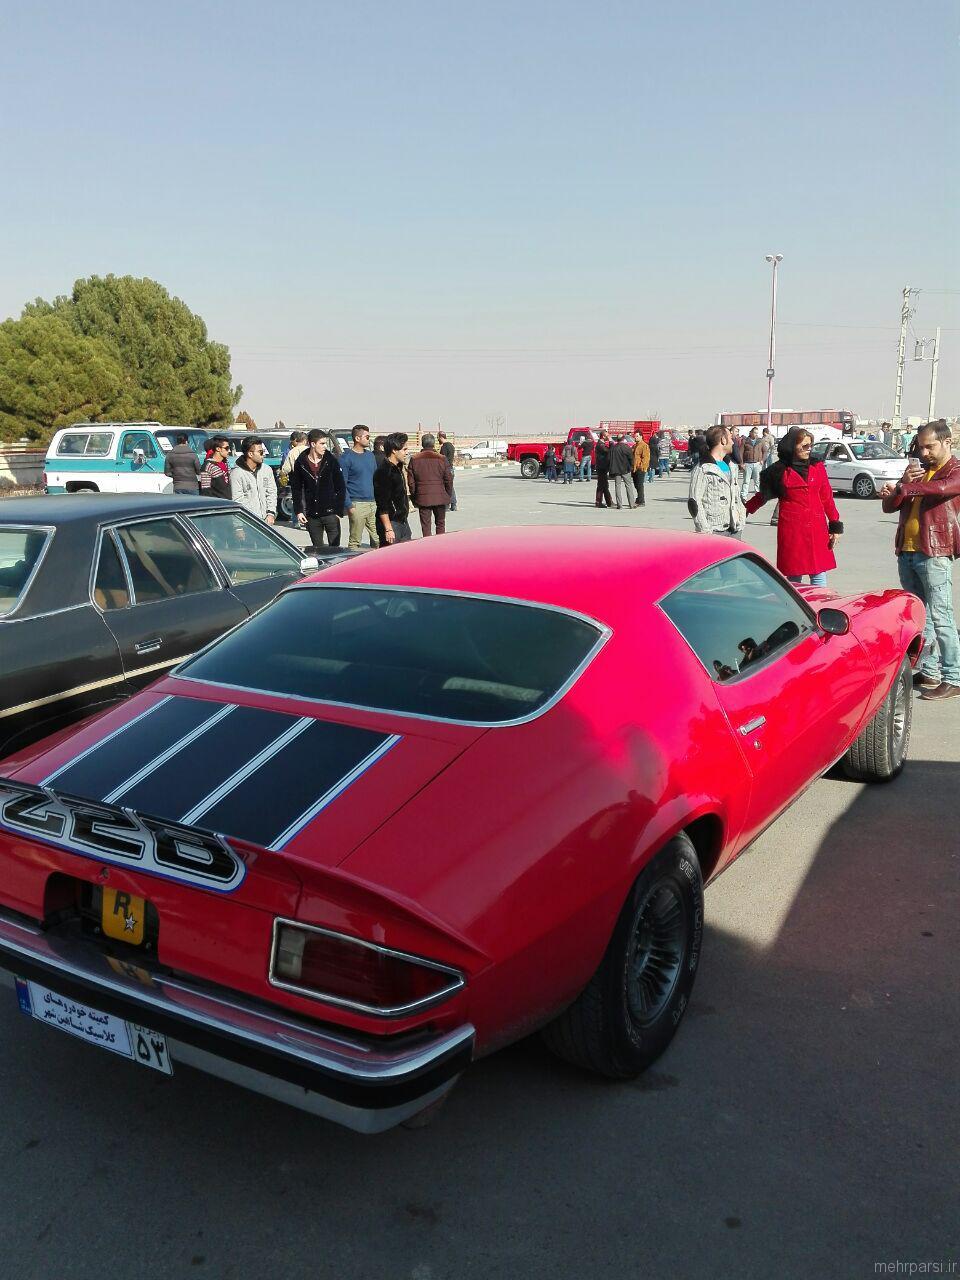 عکسهای نمایشگاه خودرودهای کلاسیک در شاهین شهر اصفهان